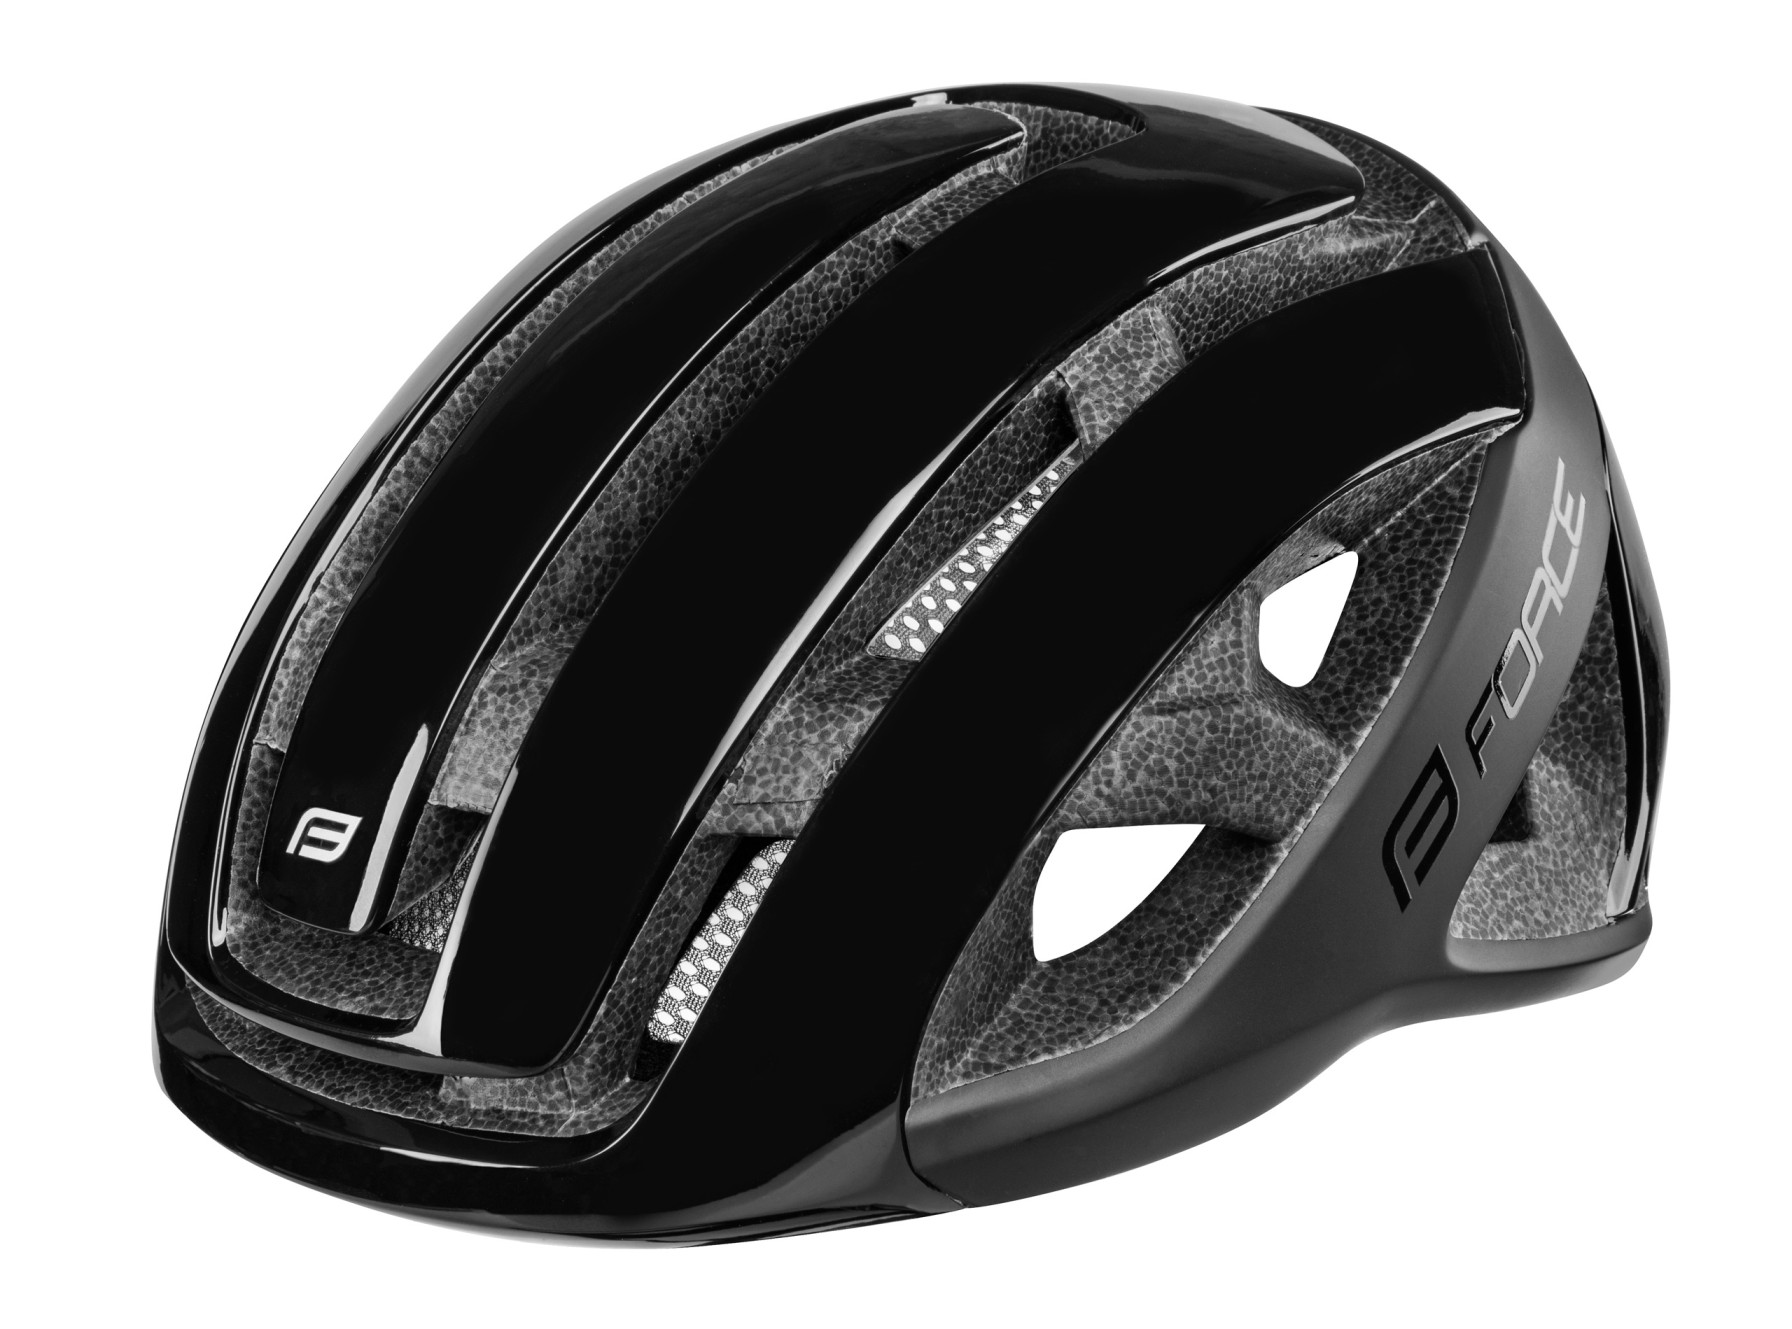 Force Neo Bicycle Helmet Black